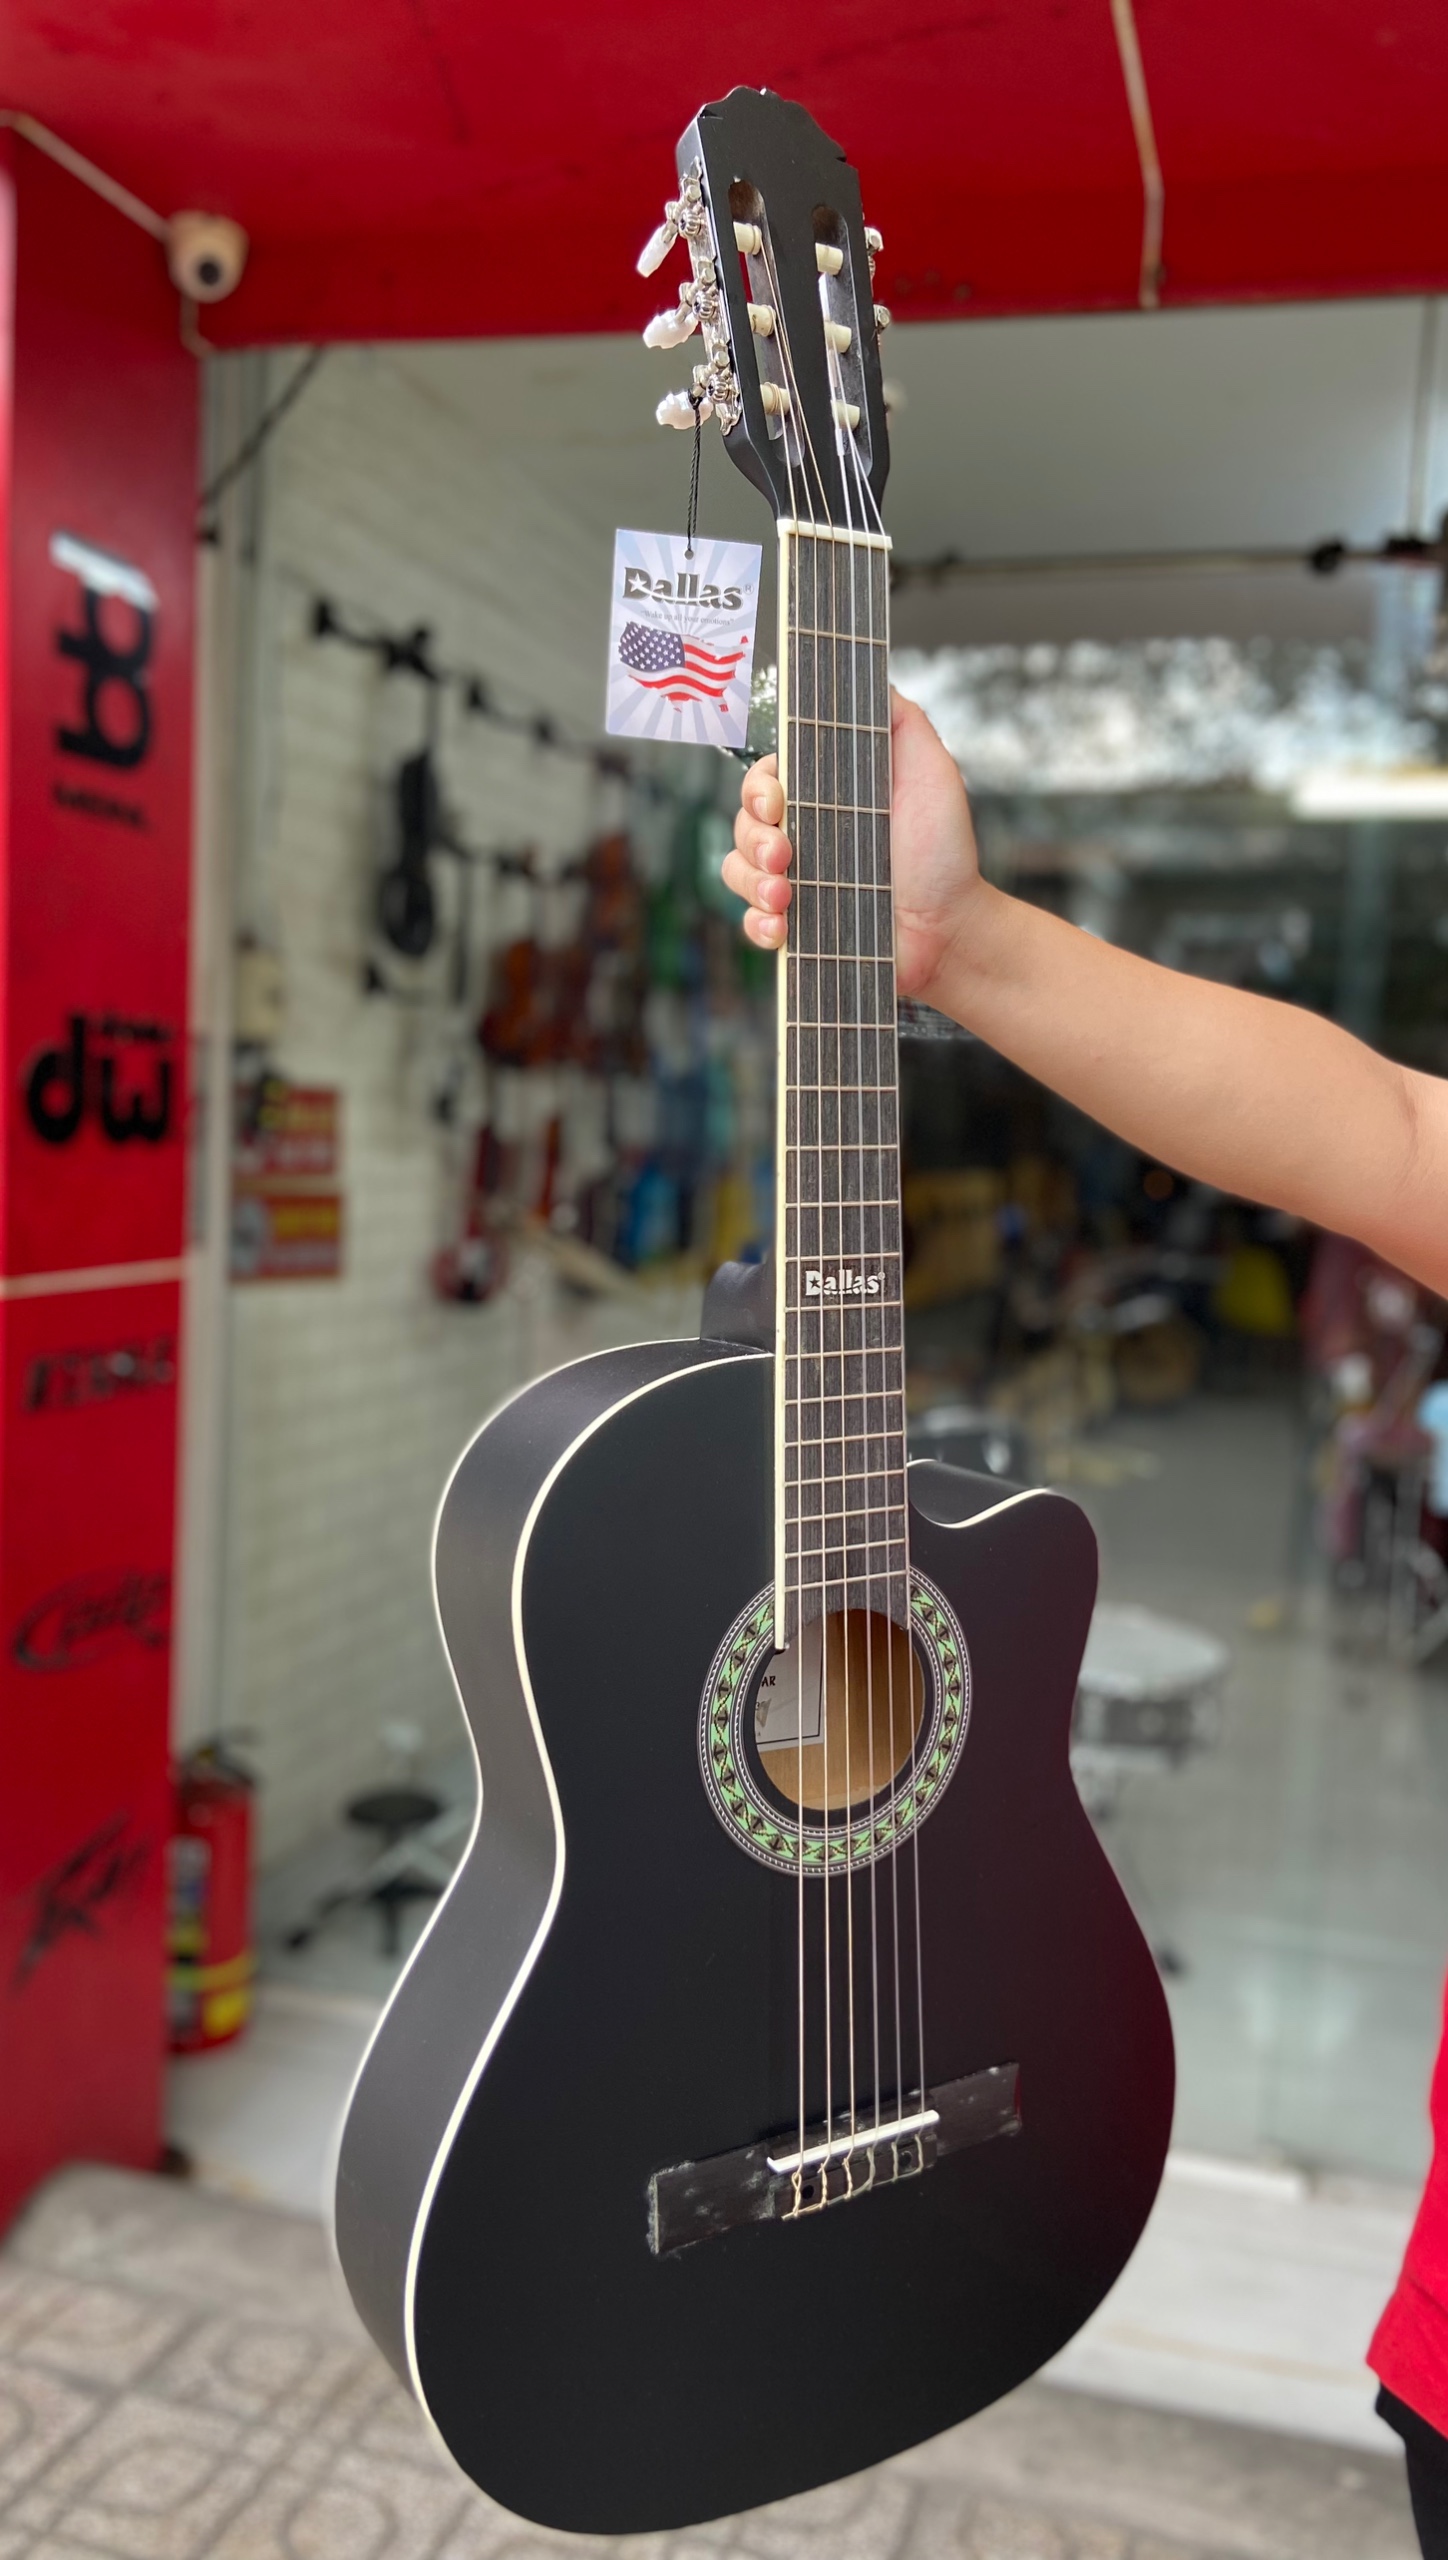 Phong Vân Music chuyên nhập khẩu và phân phối các mẫu guitar, đa dạng sản phẩm; với giá ưu đãi và chất lượng tốt. Nay Phong Vân Music giới thiệu một mẫu guitar siêu hot trong thị trường âm nhạc; Đàn guitar classic Dallas DL-S39 chính hãng.